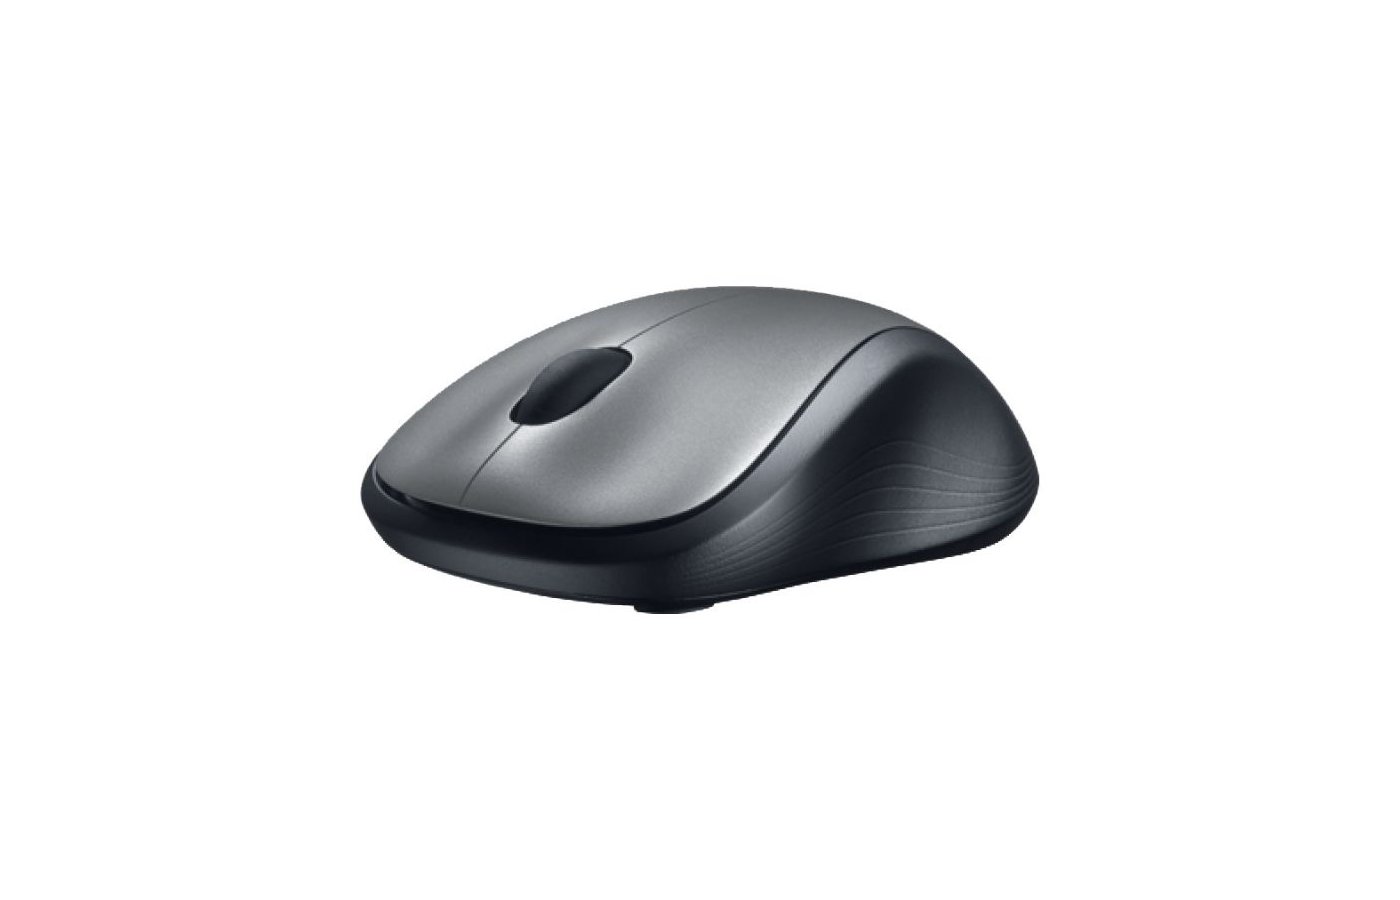 Мышь Logitech m310 Black USB. Логитеч мышка беспроводная офисная. Мышь беспроводная для ноутбука Лоджитек цветная. Мышь Omiz Bluetooth Card-sized Mouse Grey.